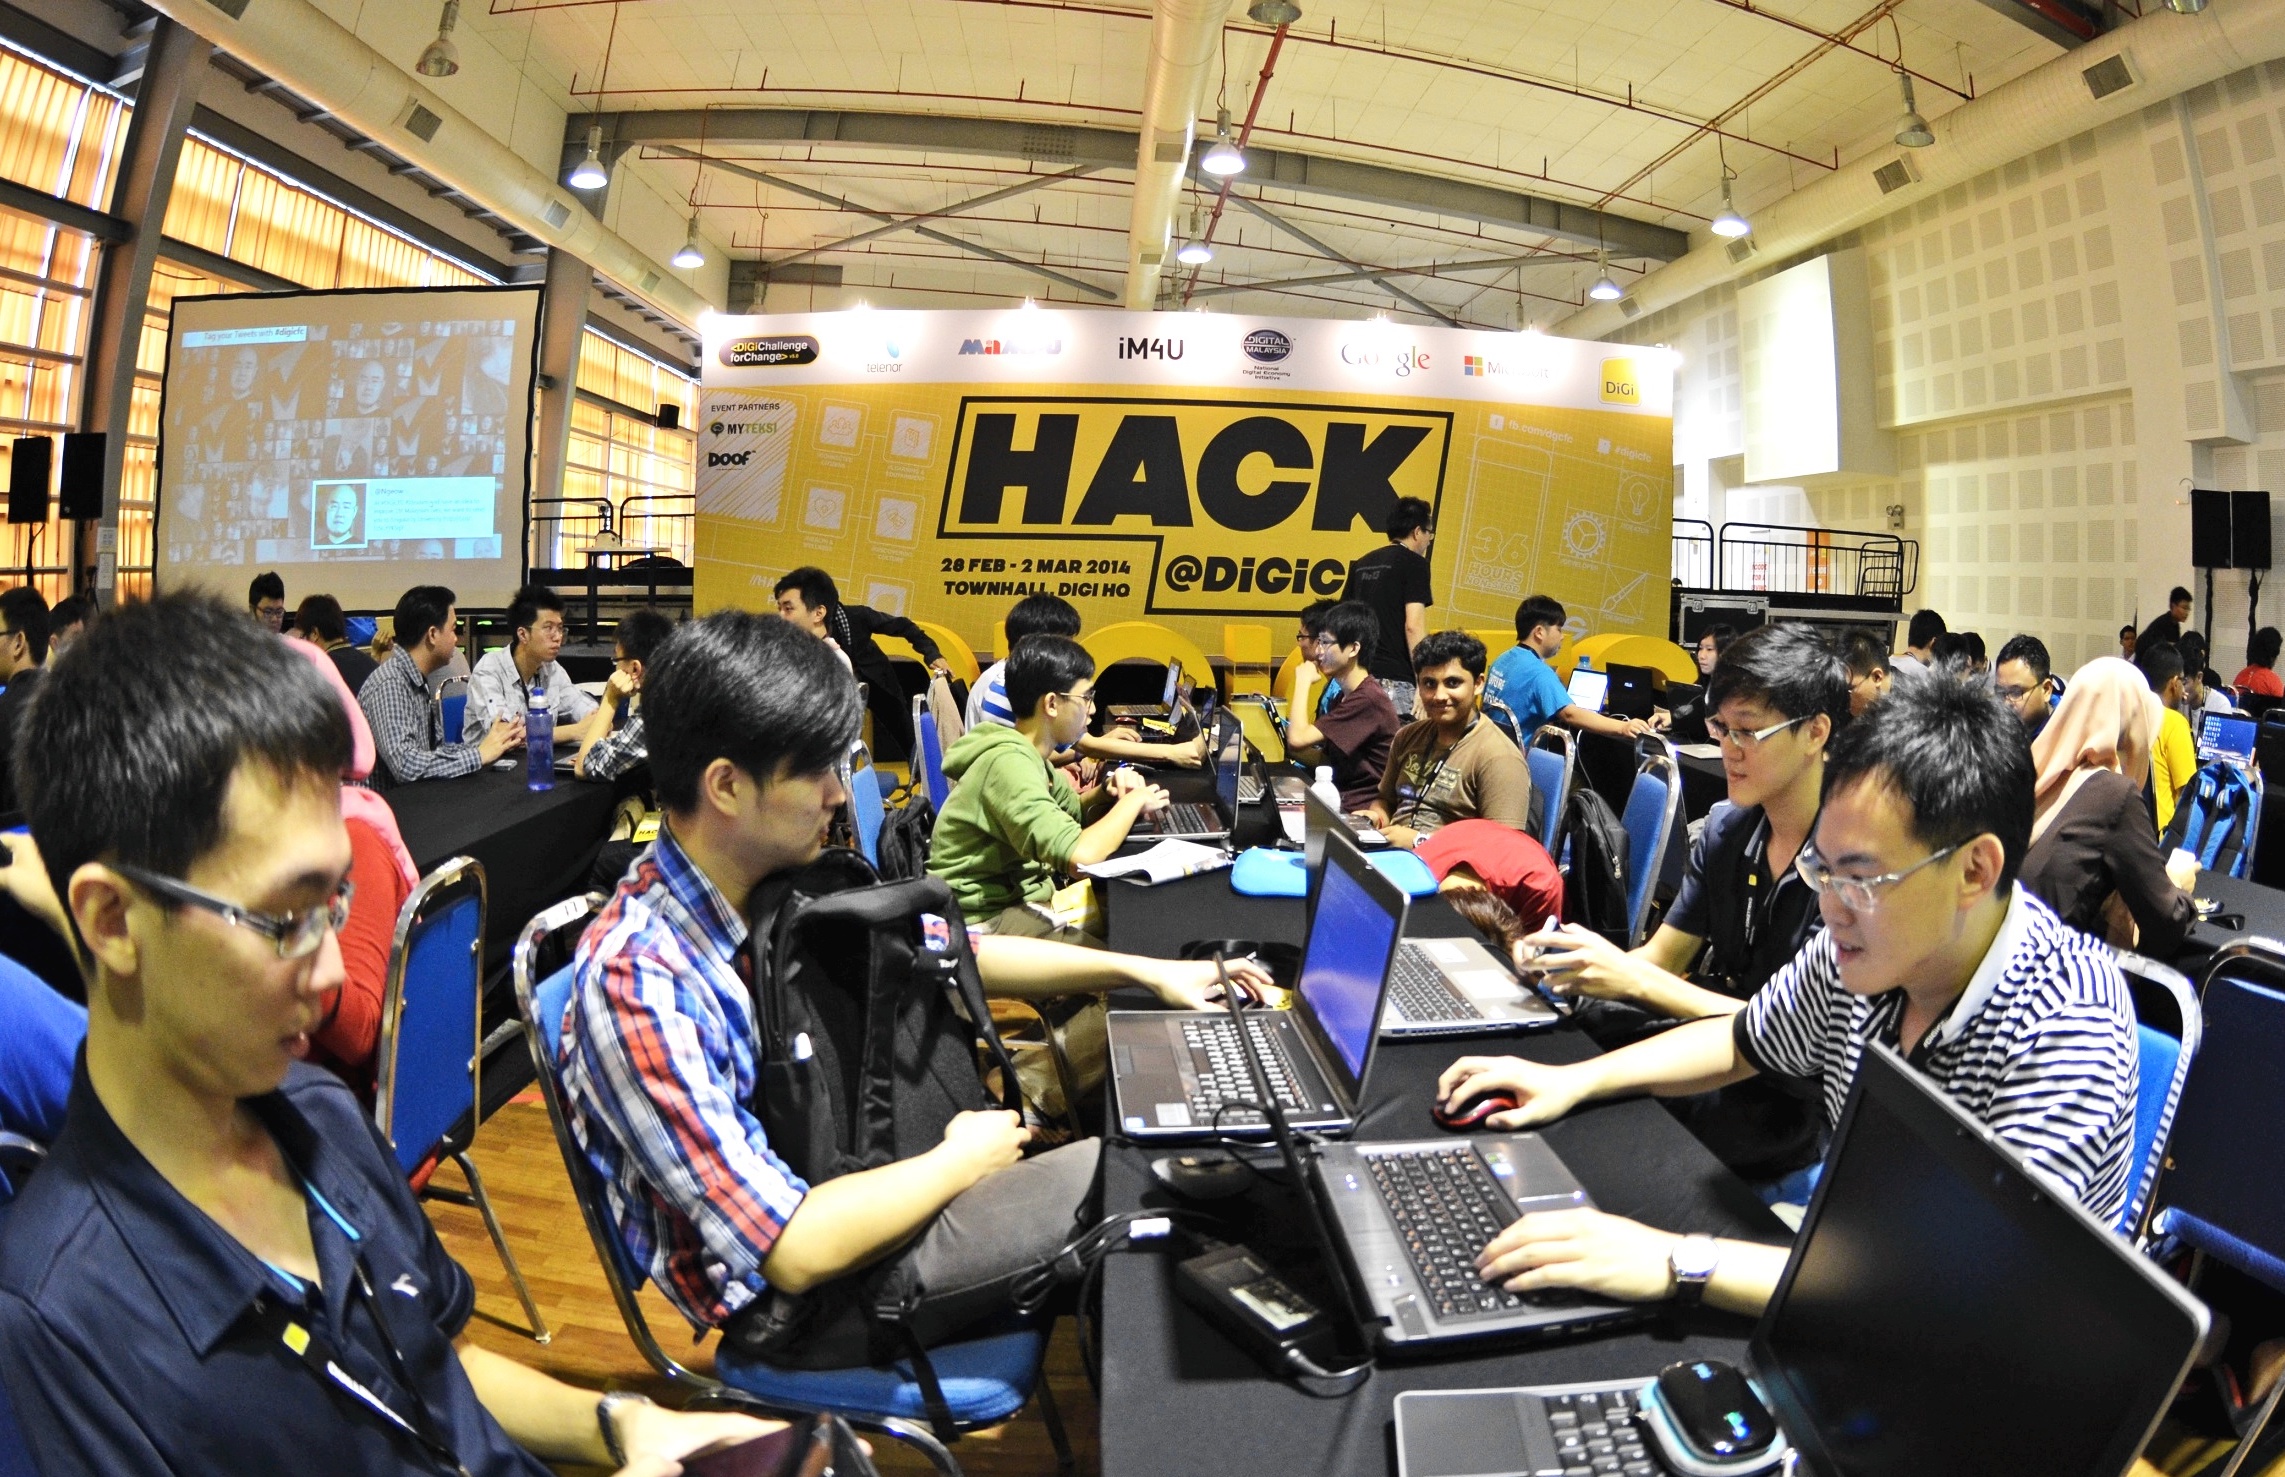 Hackathon by digi in 2014